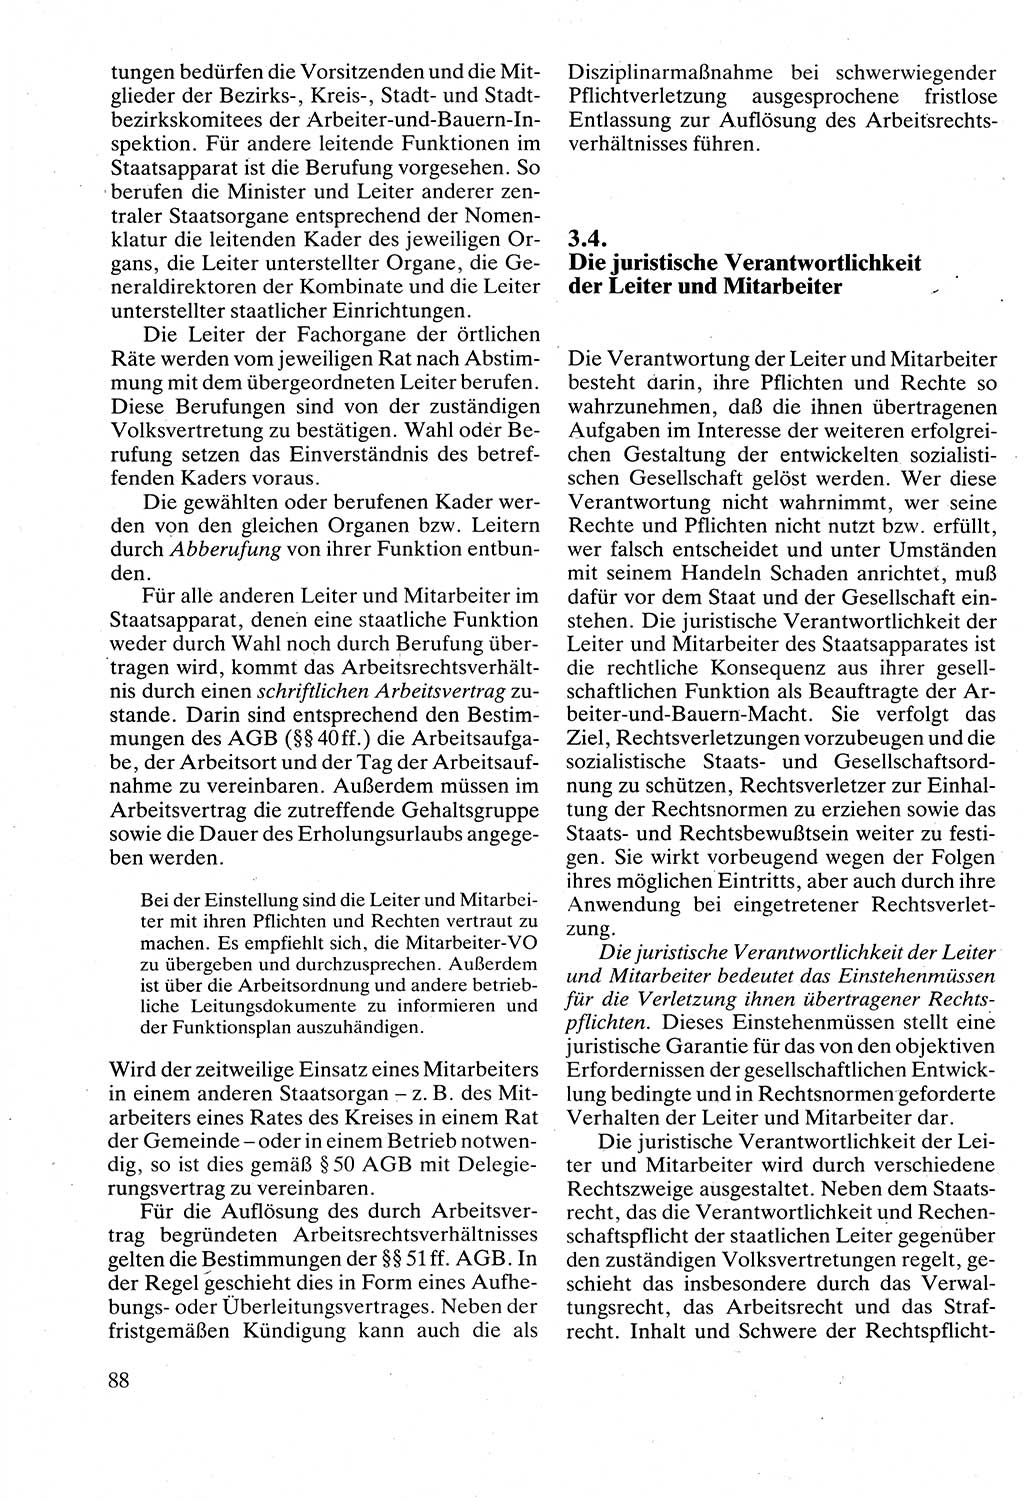 Verwaltungsrecht [Deutsche Demokratische Republik (DDR)], Lehrbuch 1988, Seite 88 (Verw.-R. DDR Lb. 1988, S. 88)